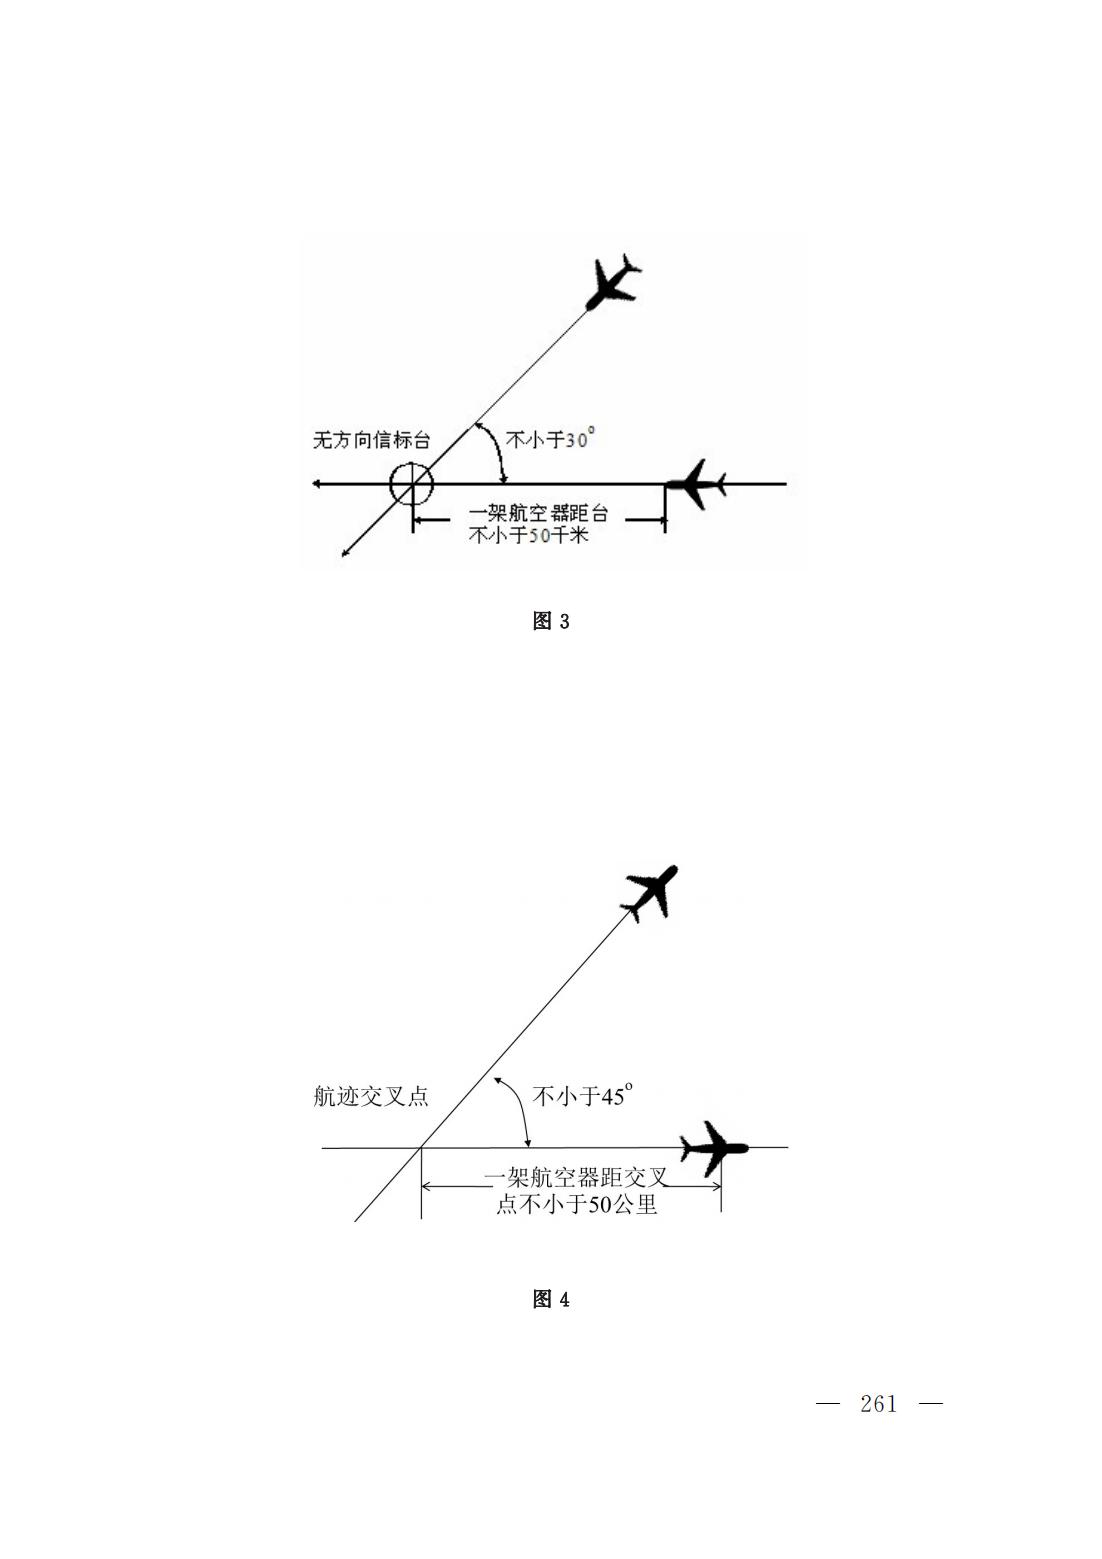 【民航规章】民用航空空中交通管理规则